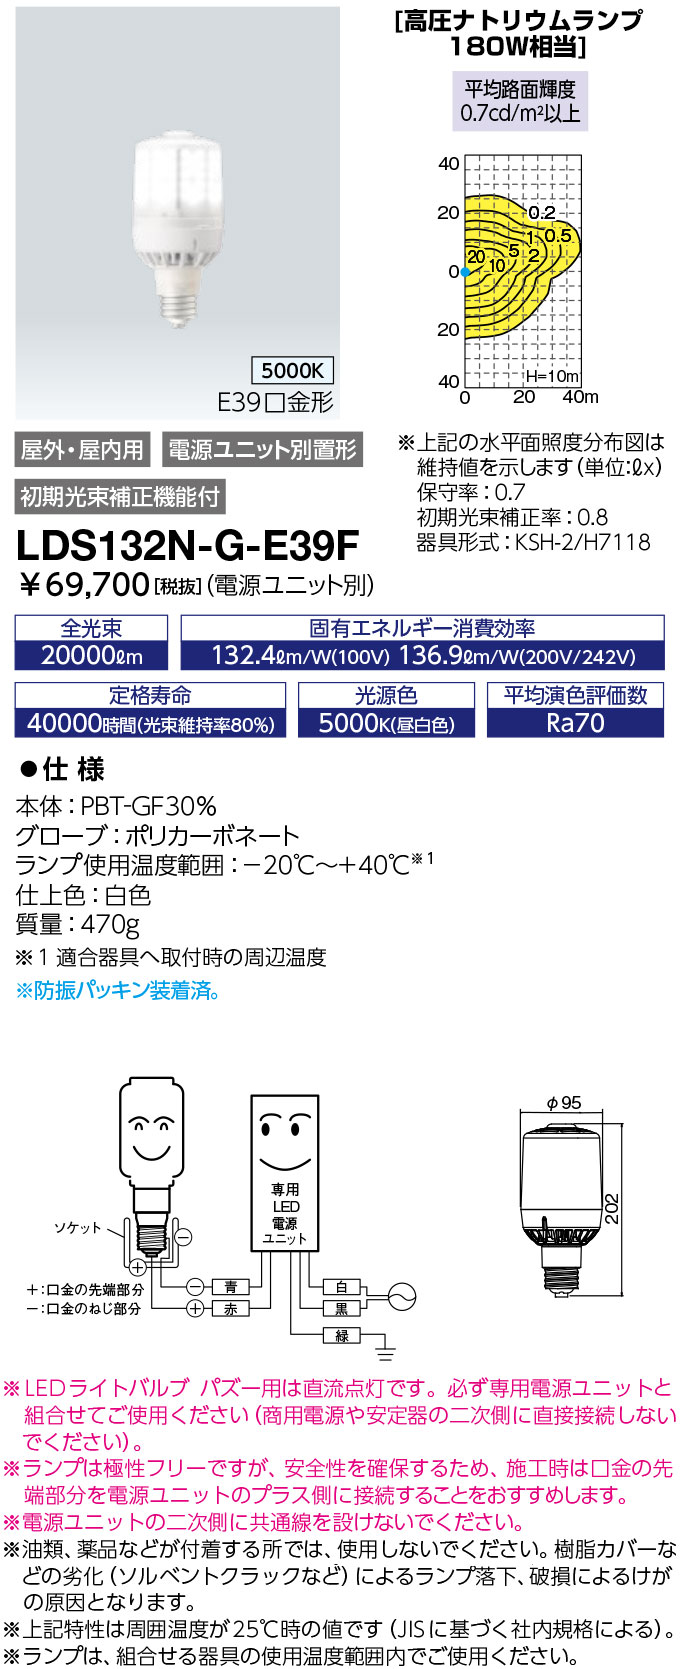 LDS132N-G-E39F